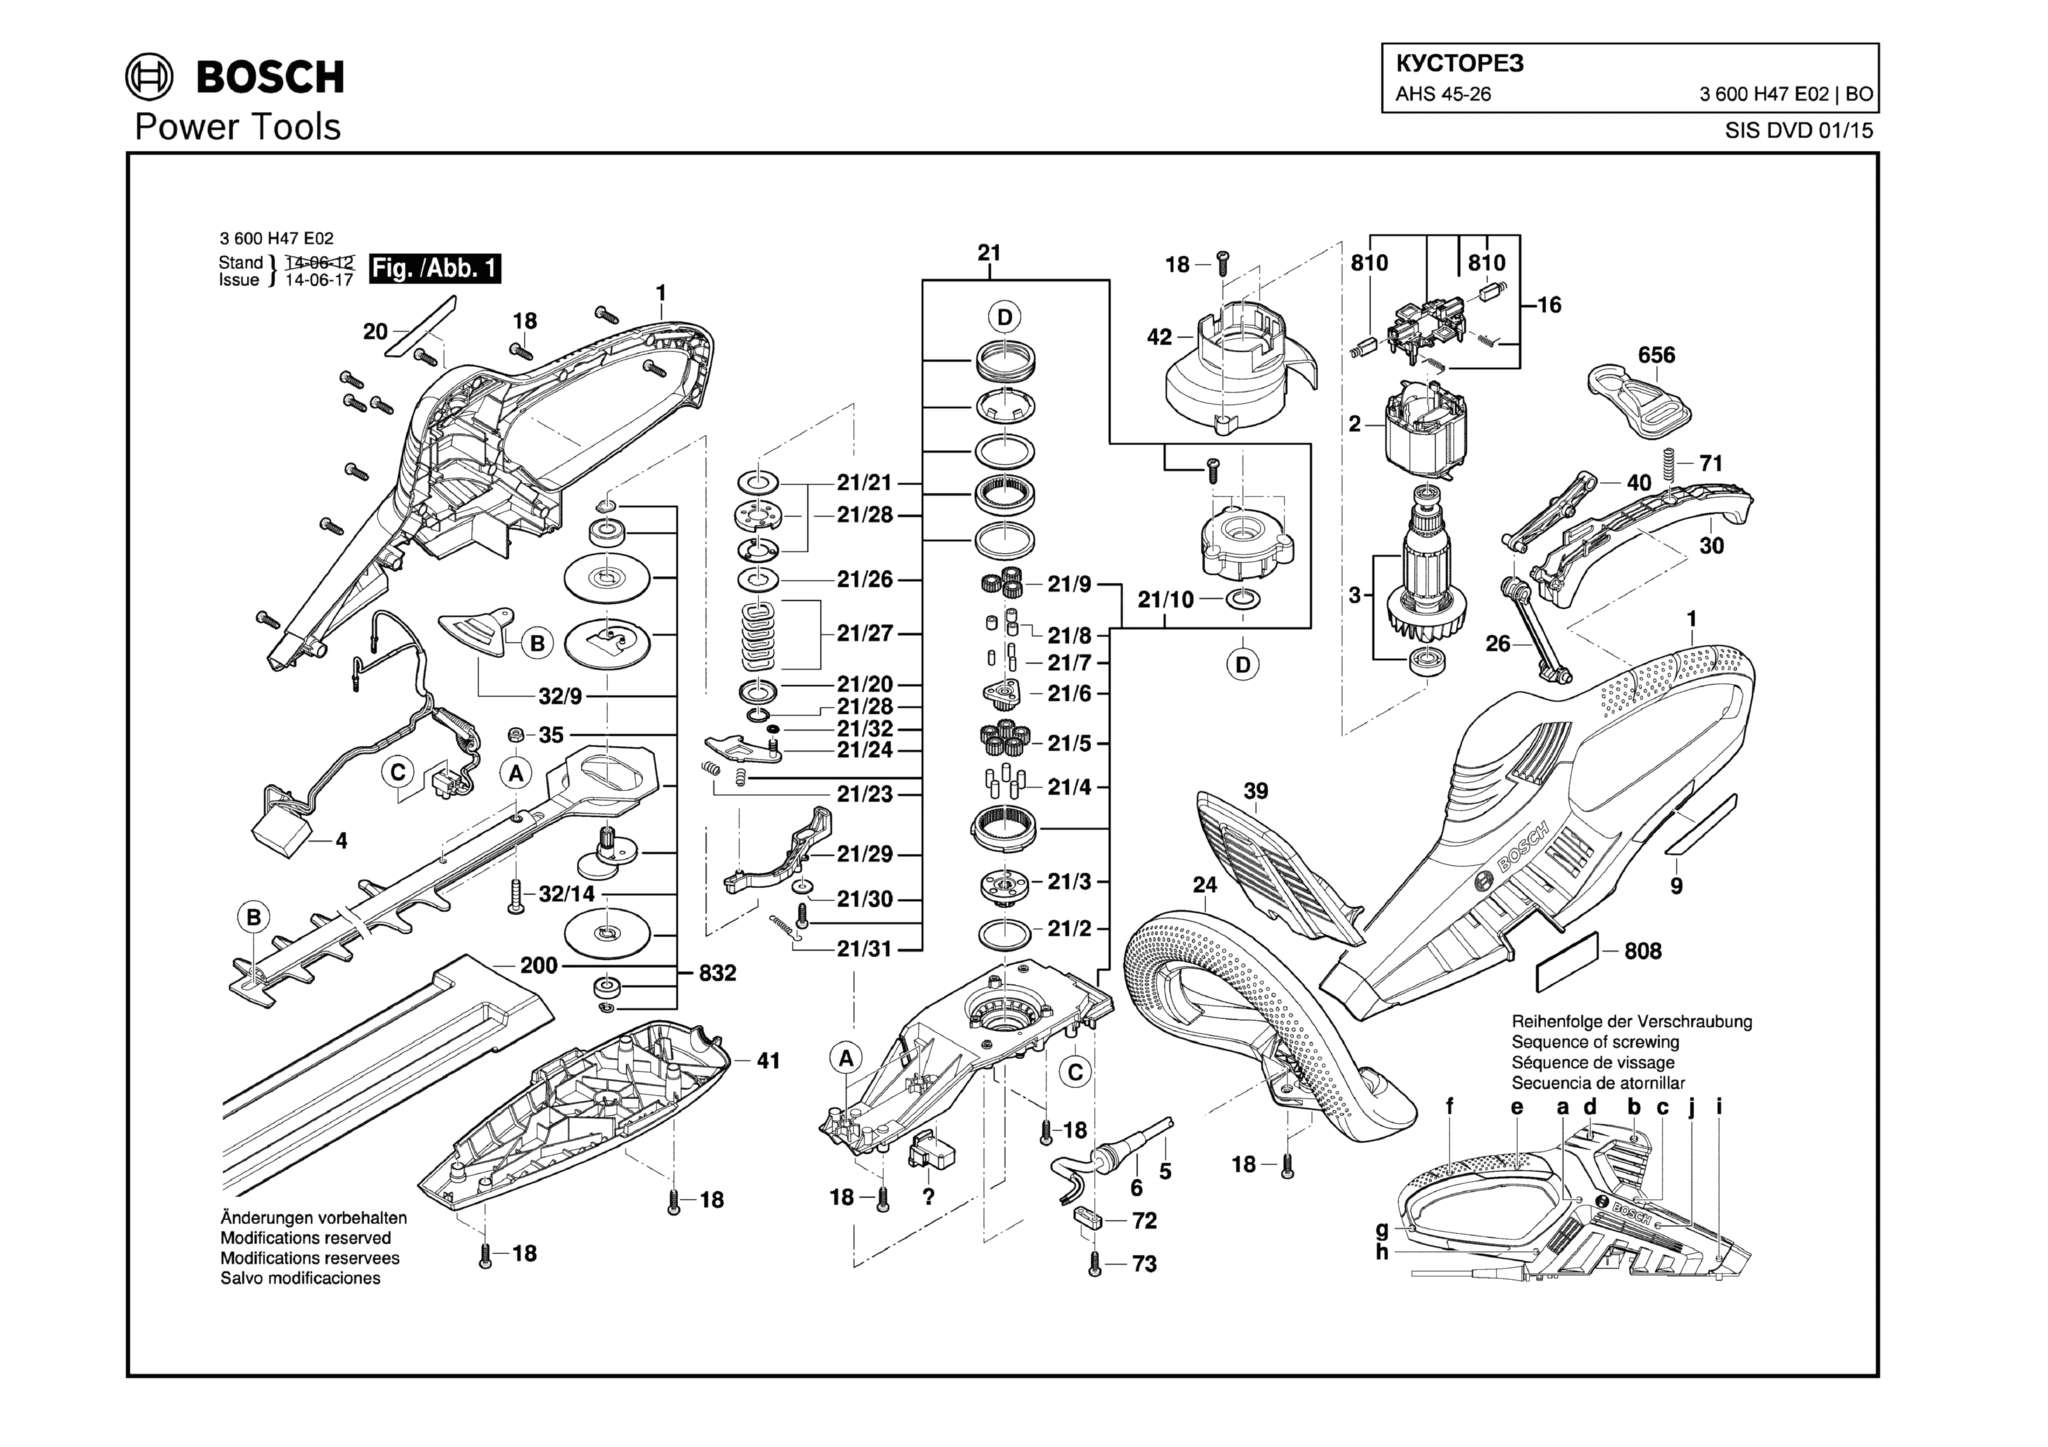 Запчасти, схема и деталировка Bosch AHS 45-26 (ТИП 3600H47E02)